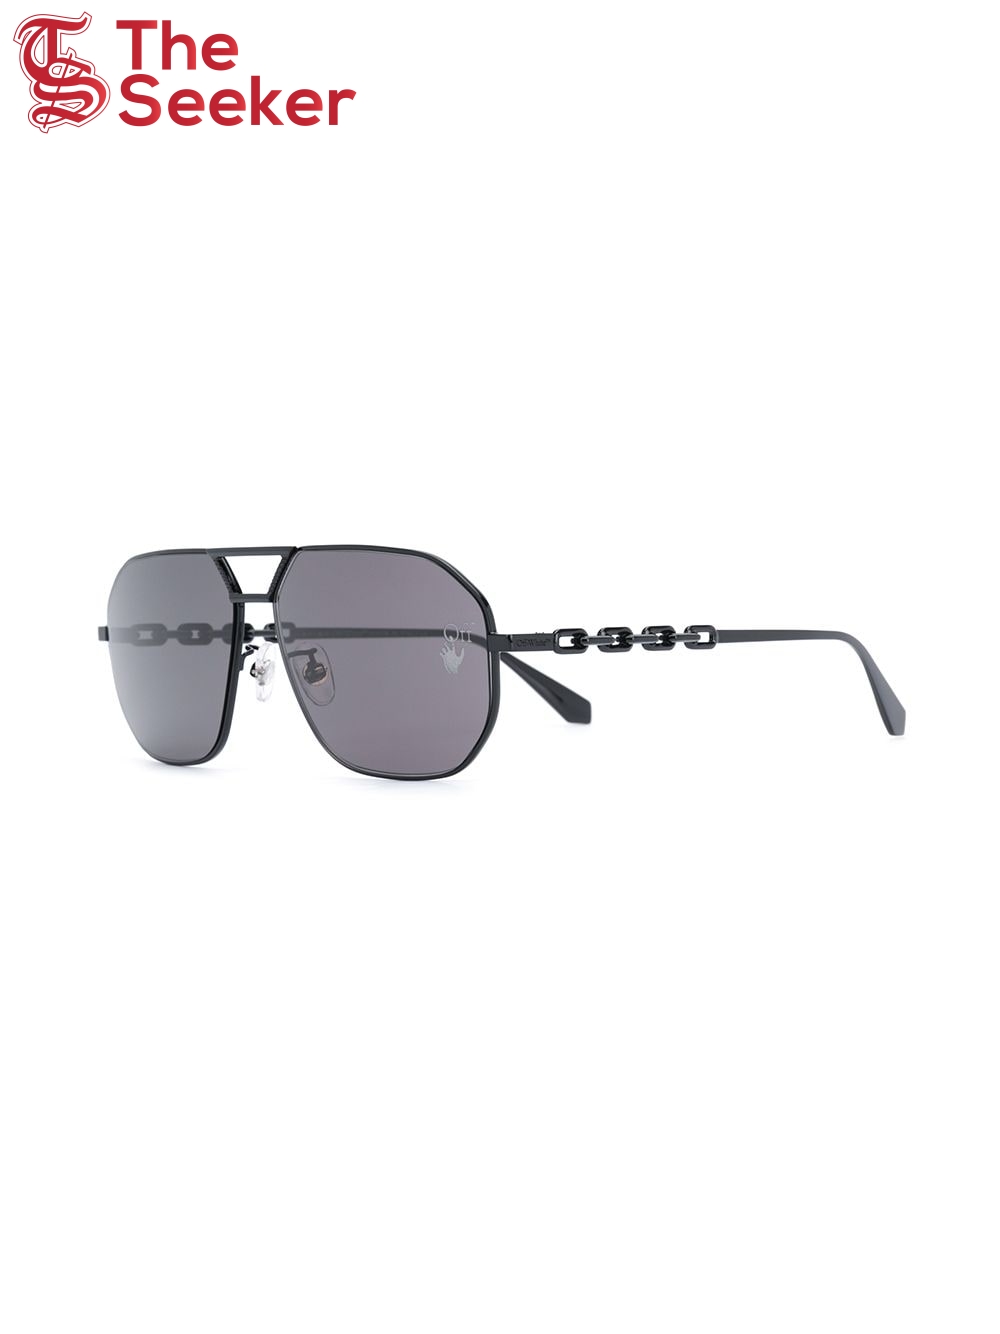 OFF-WHITE Wright Aviator Sunglasses Black/Grey (OMRI007F20MET0011000)